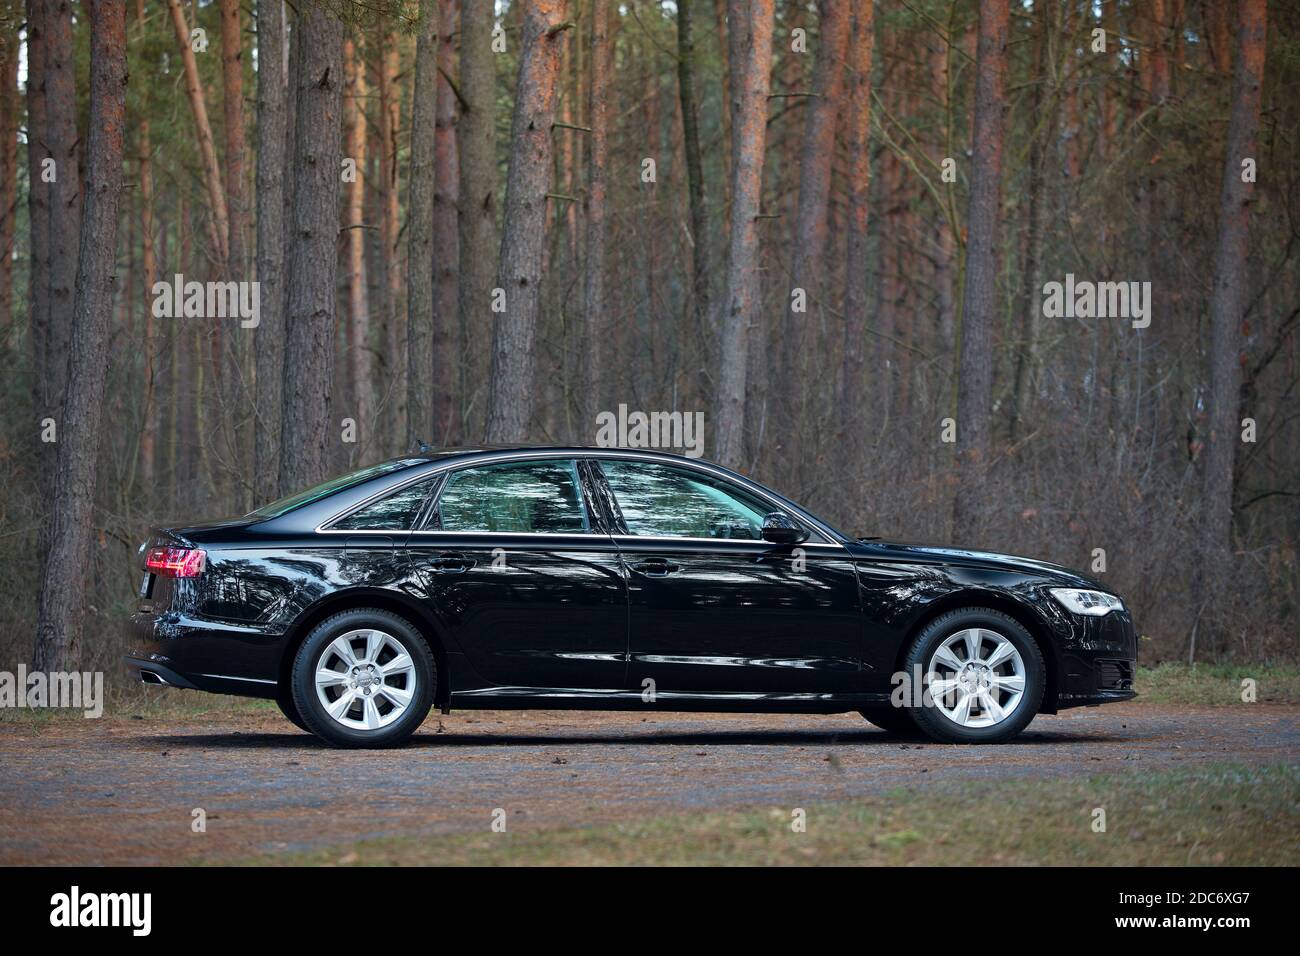 File:Audi A6 C7 (Type 4G) Wien 25 July 2020 JM.jpg - Wikimedia Commons